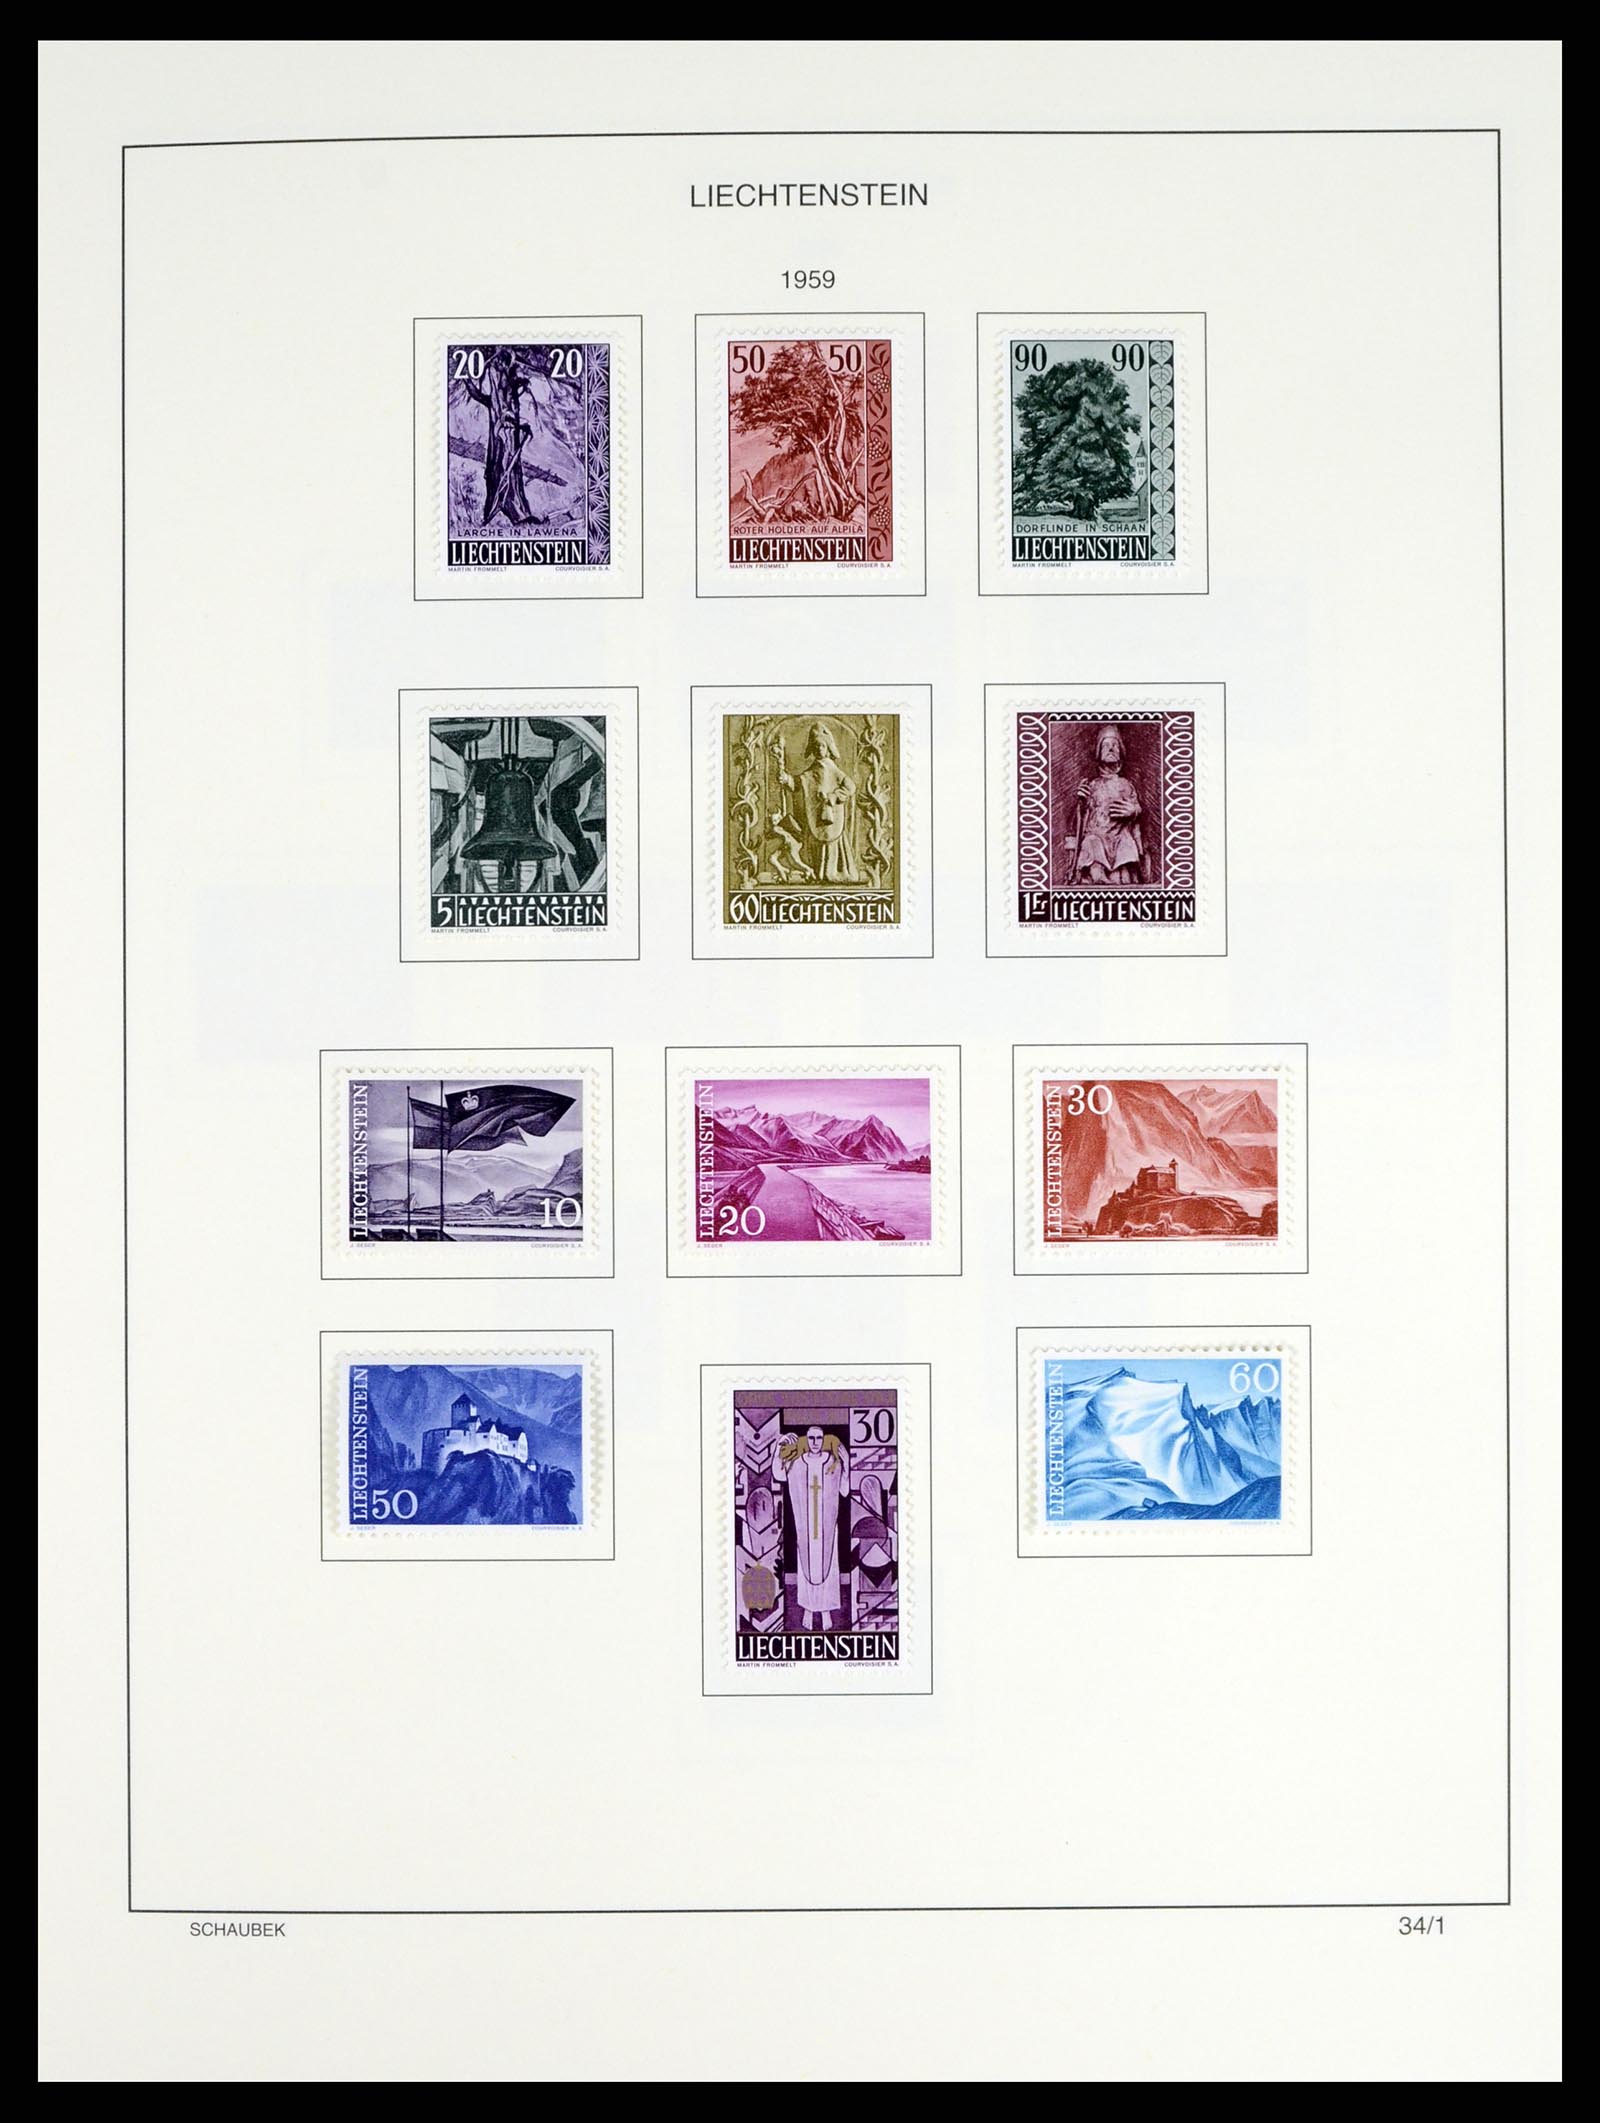 37547 040 - Stamp collection 37547 Liechtenstein 1912-2011.